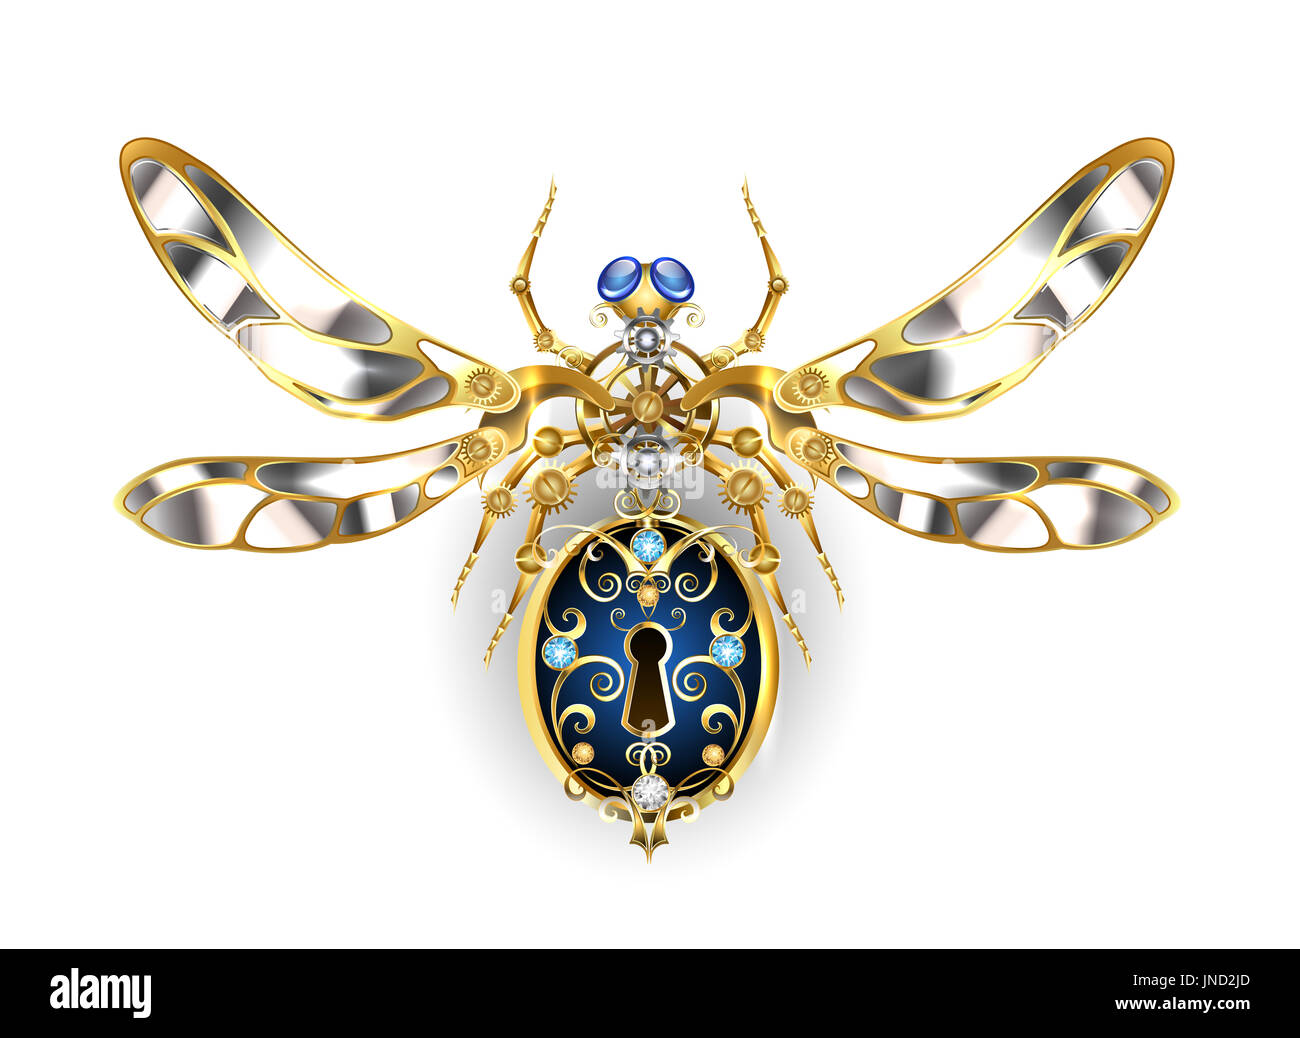 Mechanische Insekt mit Stahl Flügel, verziert mit gold Zahnräder und Runde Saphire auf einem weißen Hintergrund. Steampunk-Stil. Mechanische Insekt. Stockfoto